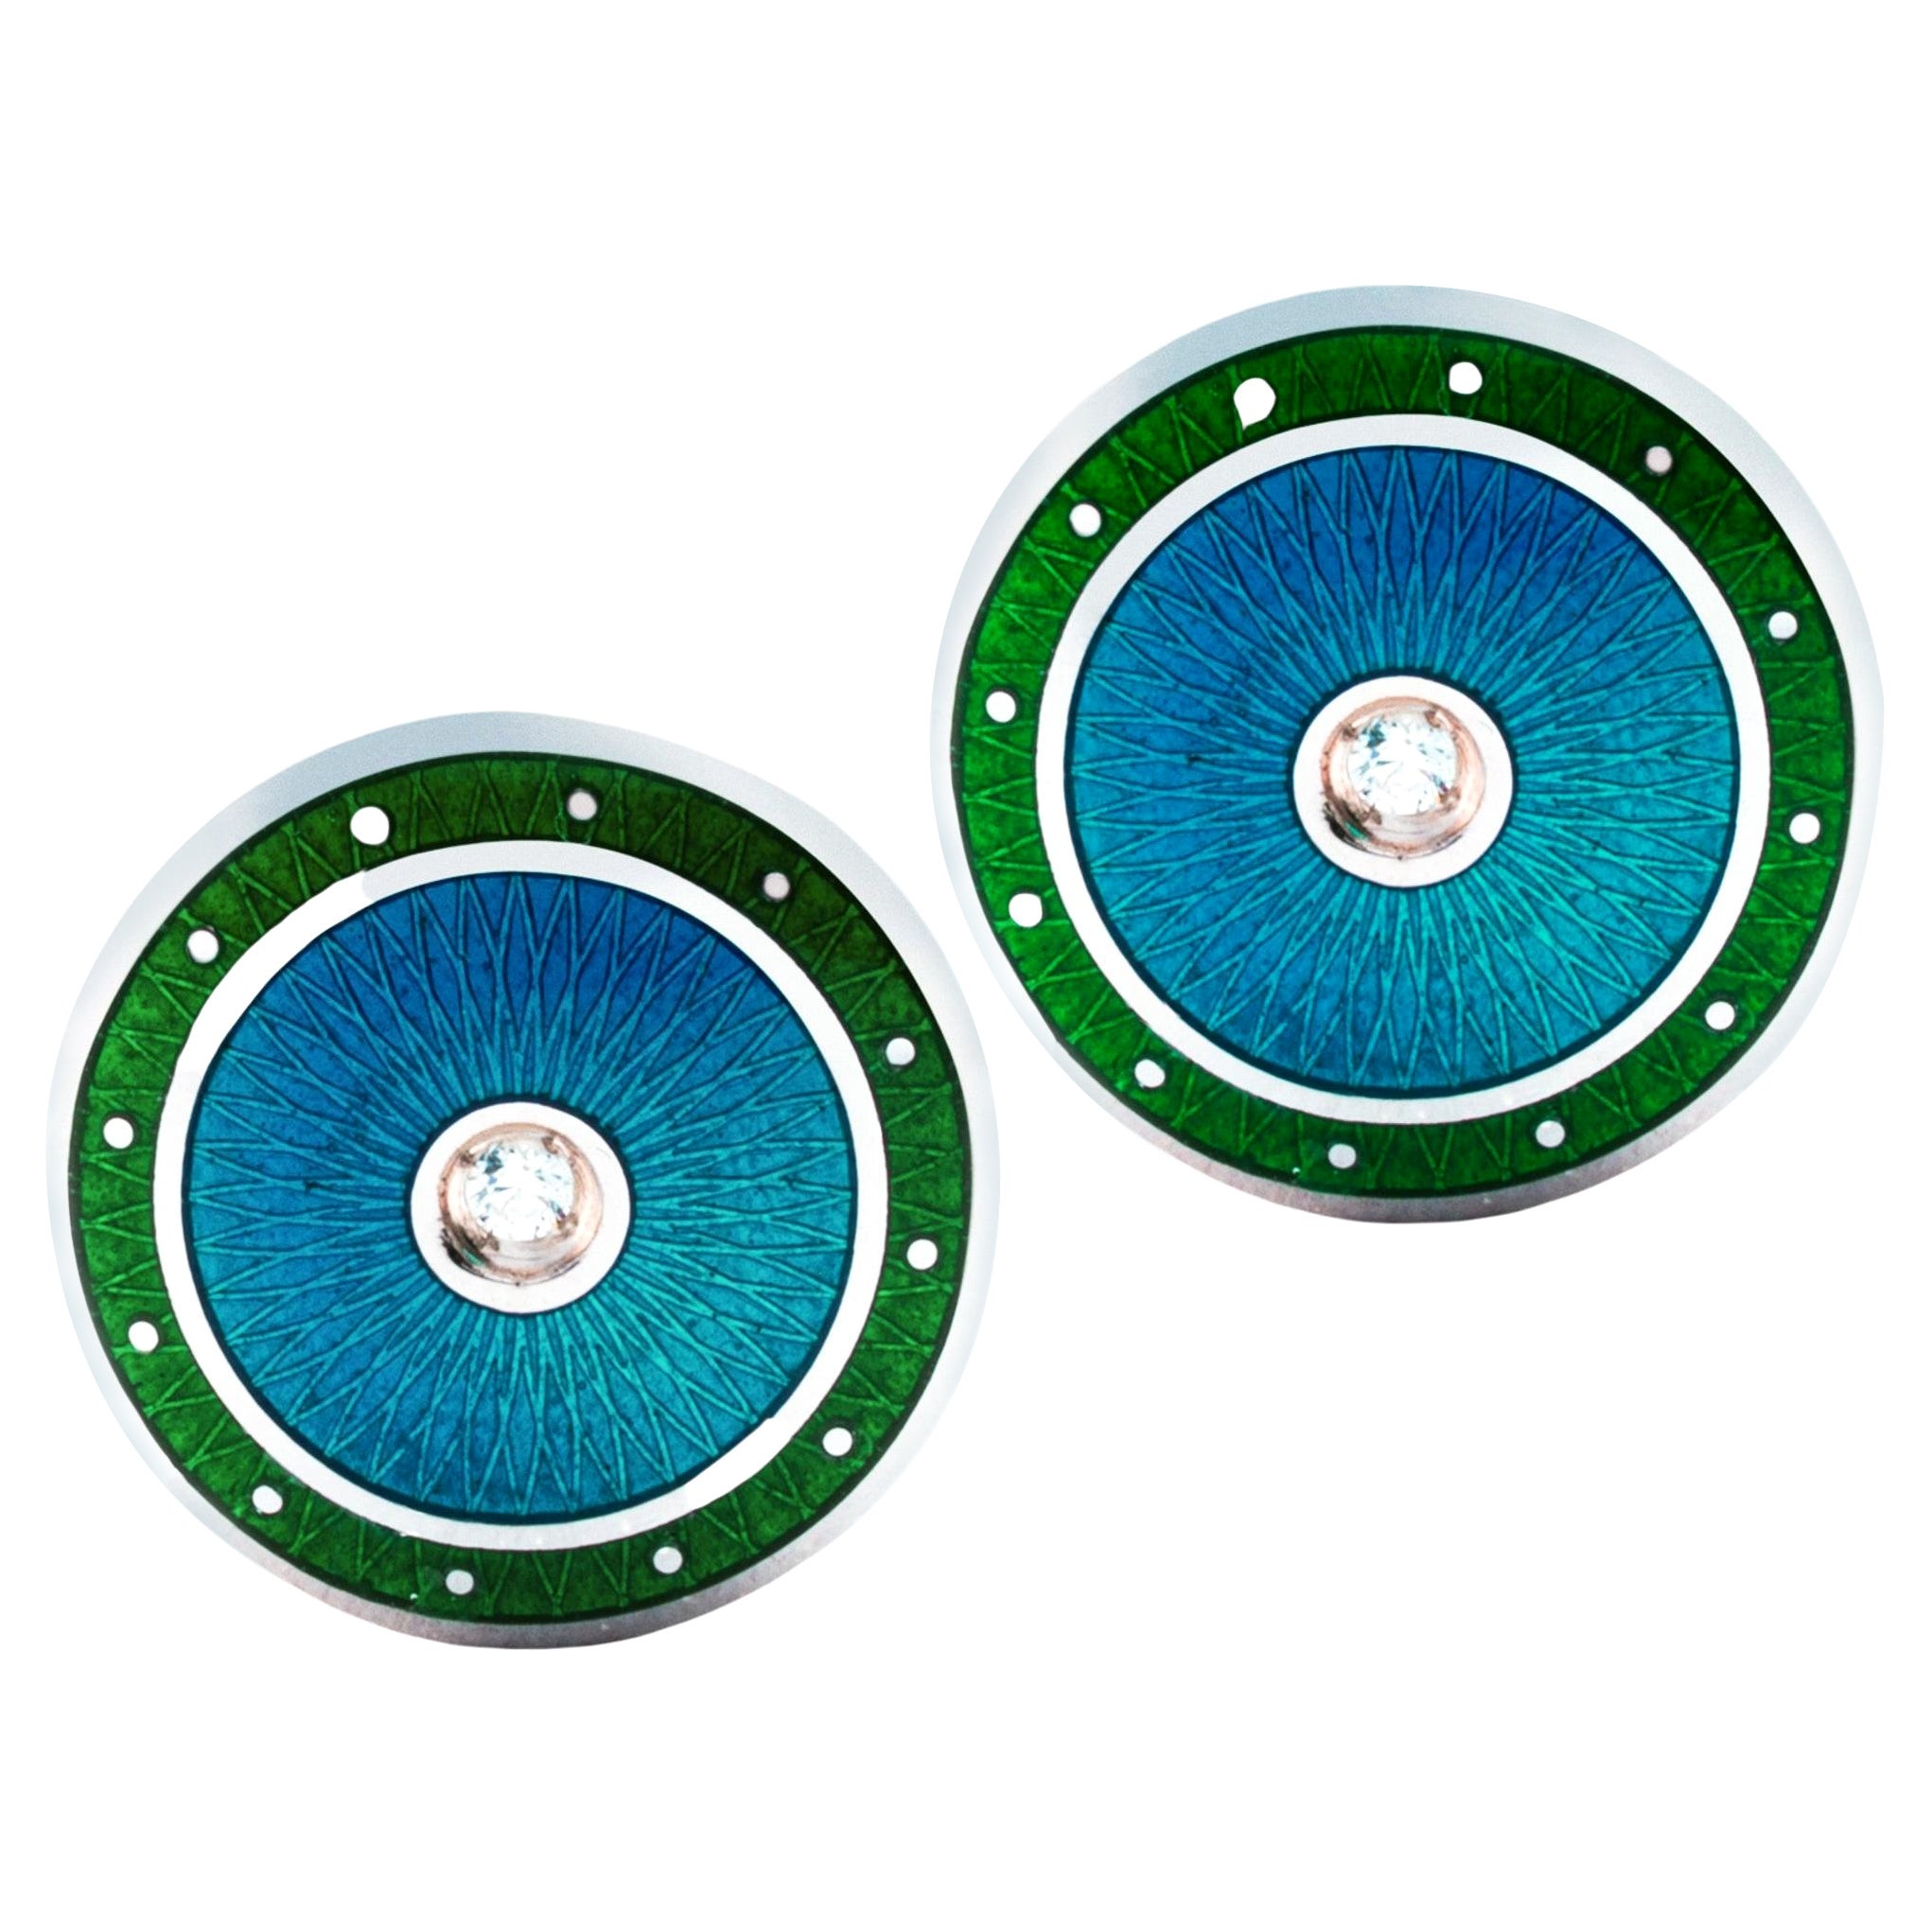 Manschettenknöpfe von Alex Jona aus Sterlingsilber mit weißen Diamanten, grüner und blauer Emaille